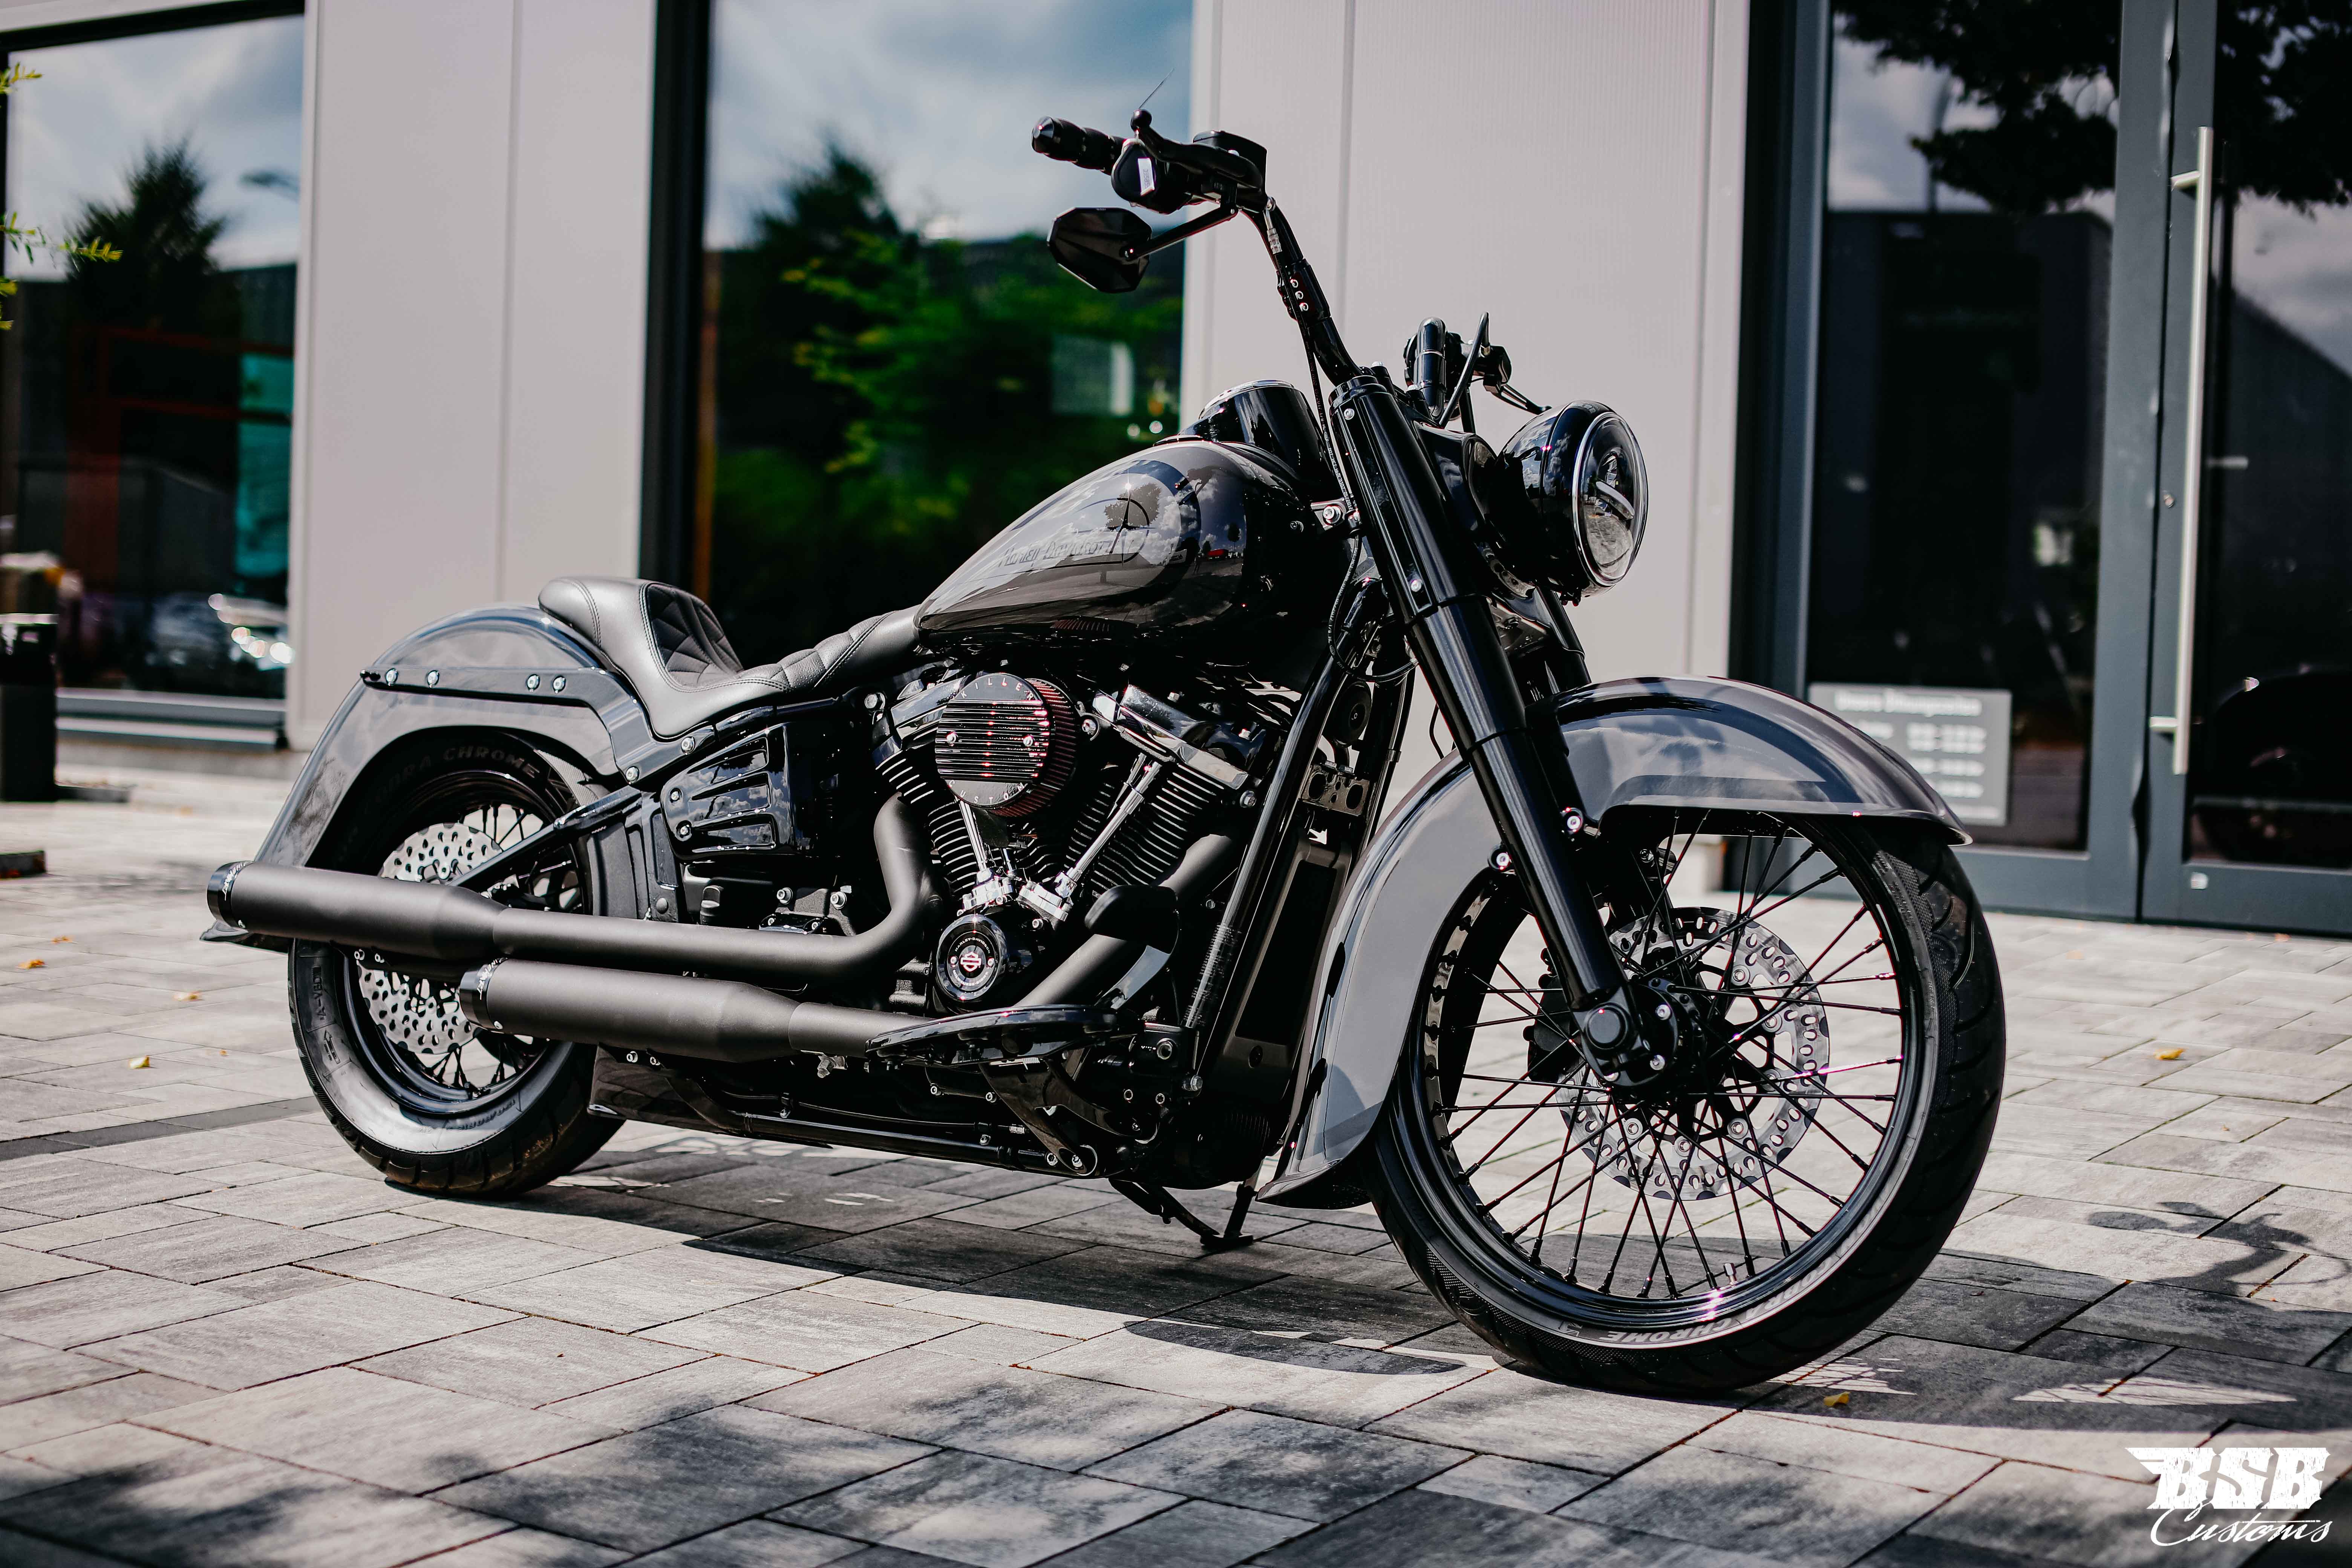 2018 Harley Davidson Heritage 107 CUI Chicano Umbau mit Jekill & Hyde Anlage (ab 300 EUR finanzieren*)